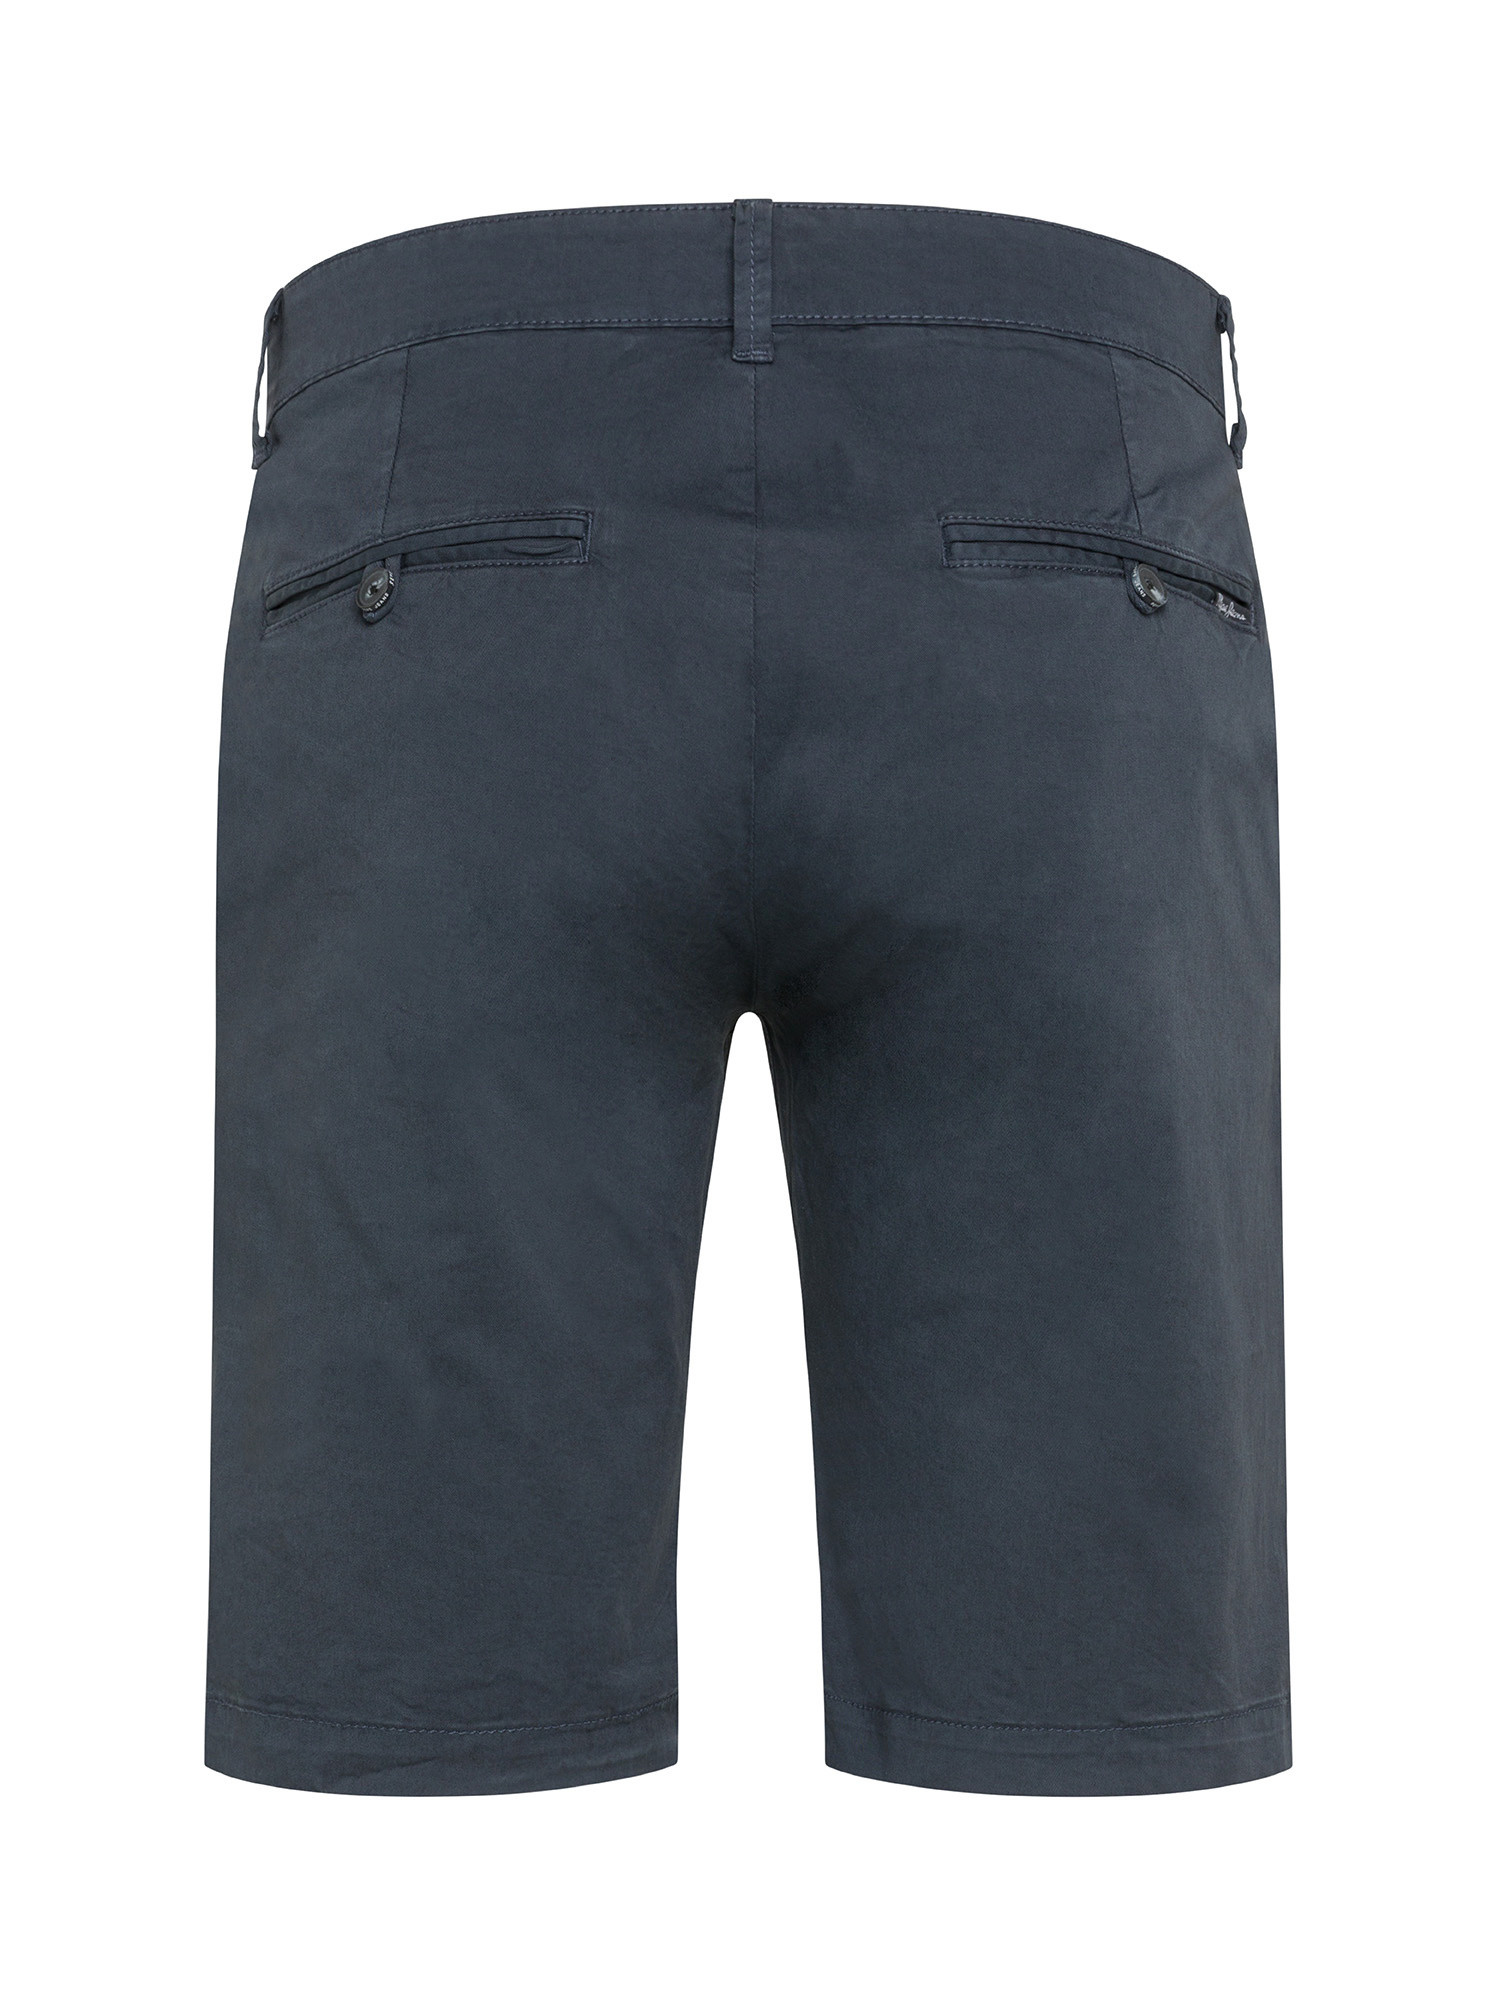 Pepe Jeans - Bermuda in cotone elasticizzato, Blu scuro, large image number 1